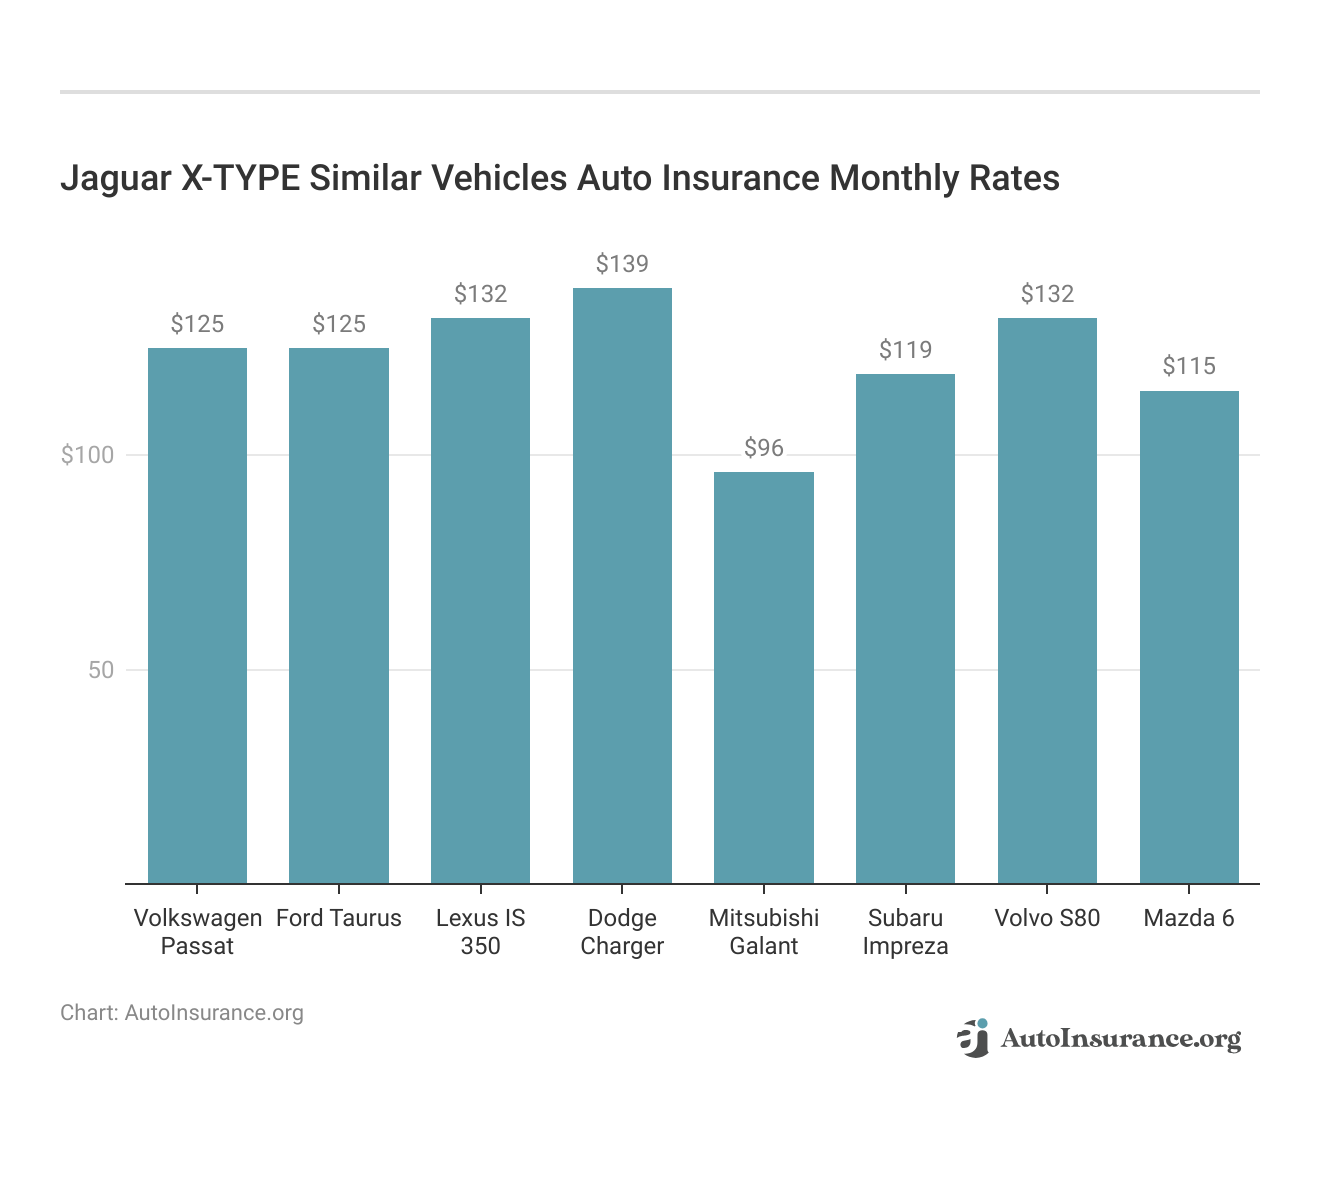 <h3>Jaguar X-TYPE Similar Vehicles Auto Insurance Monthly Rates</h3>